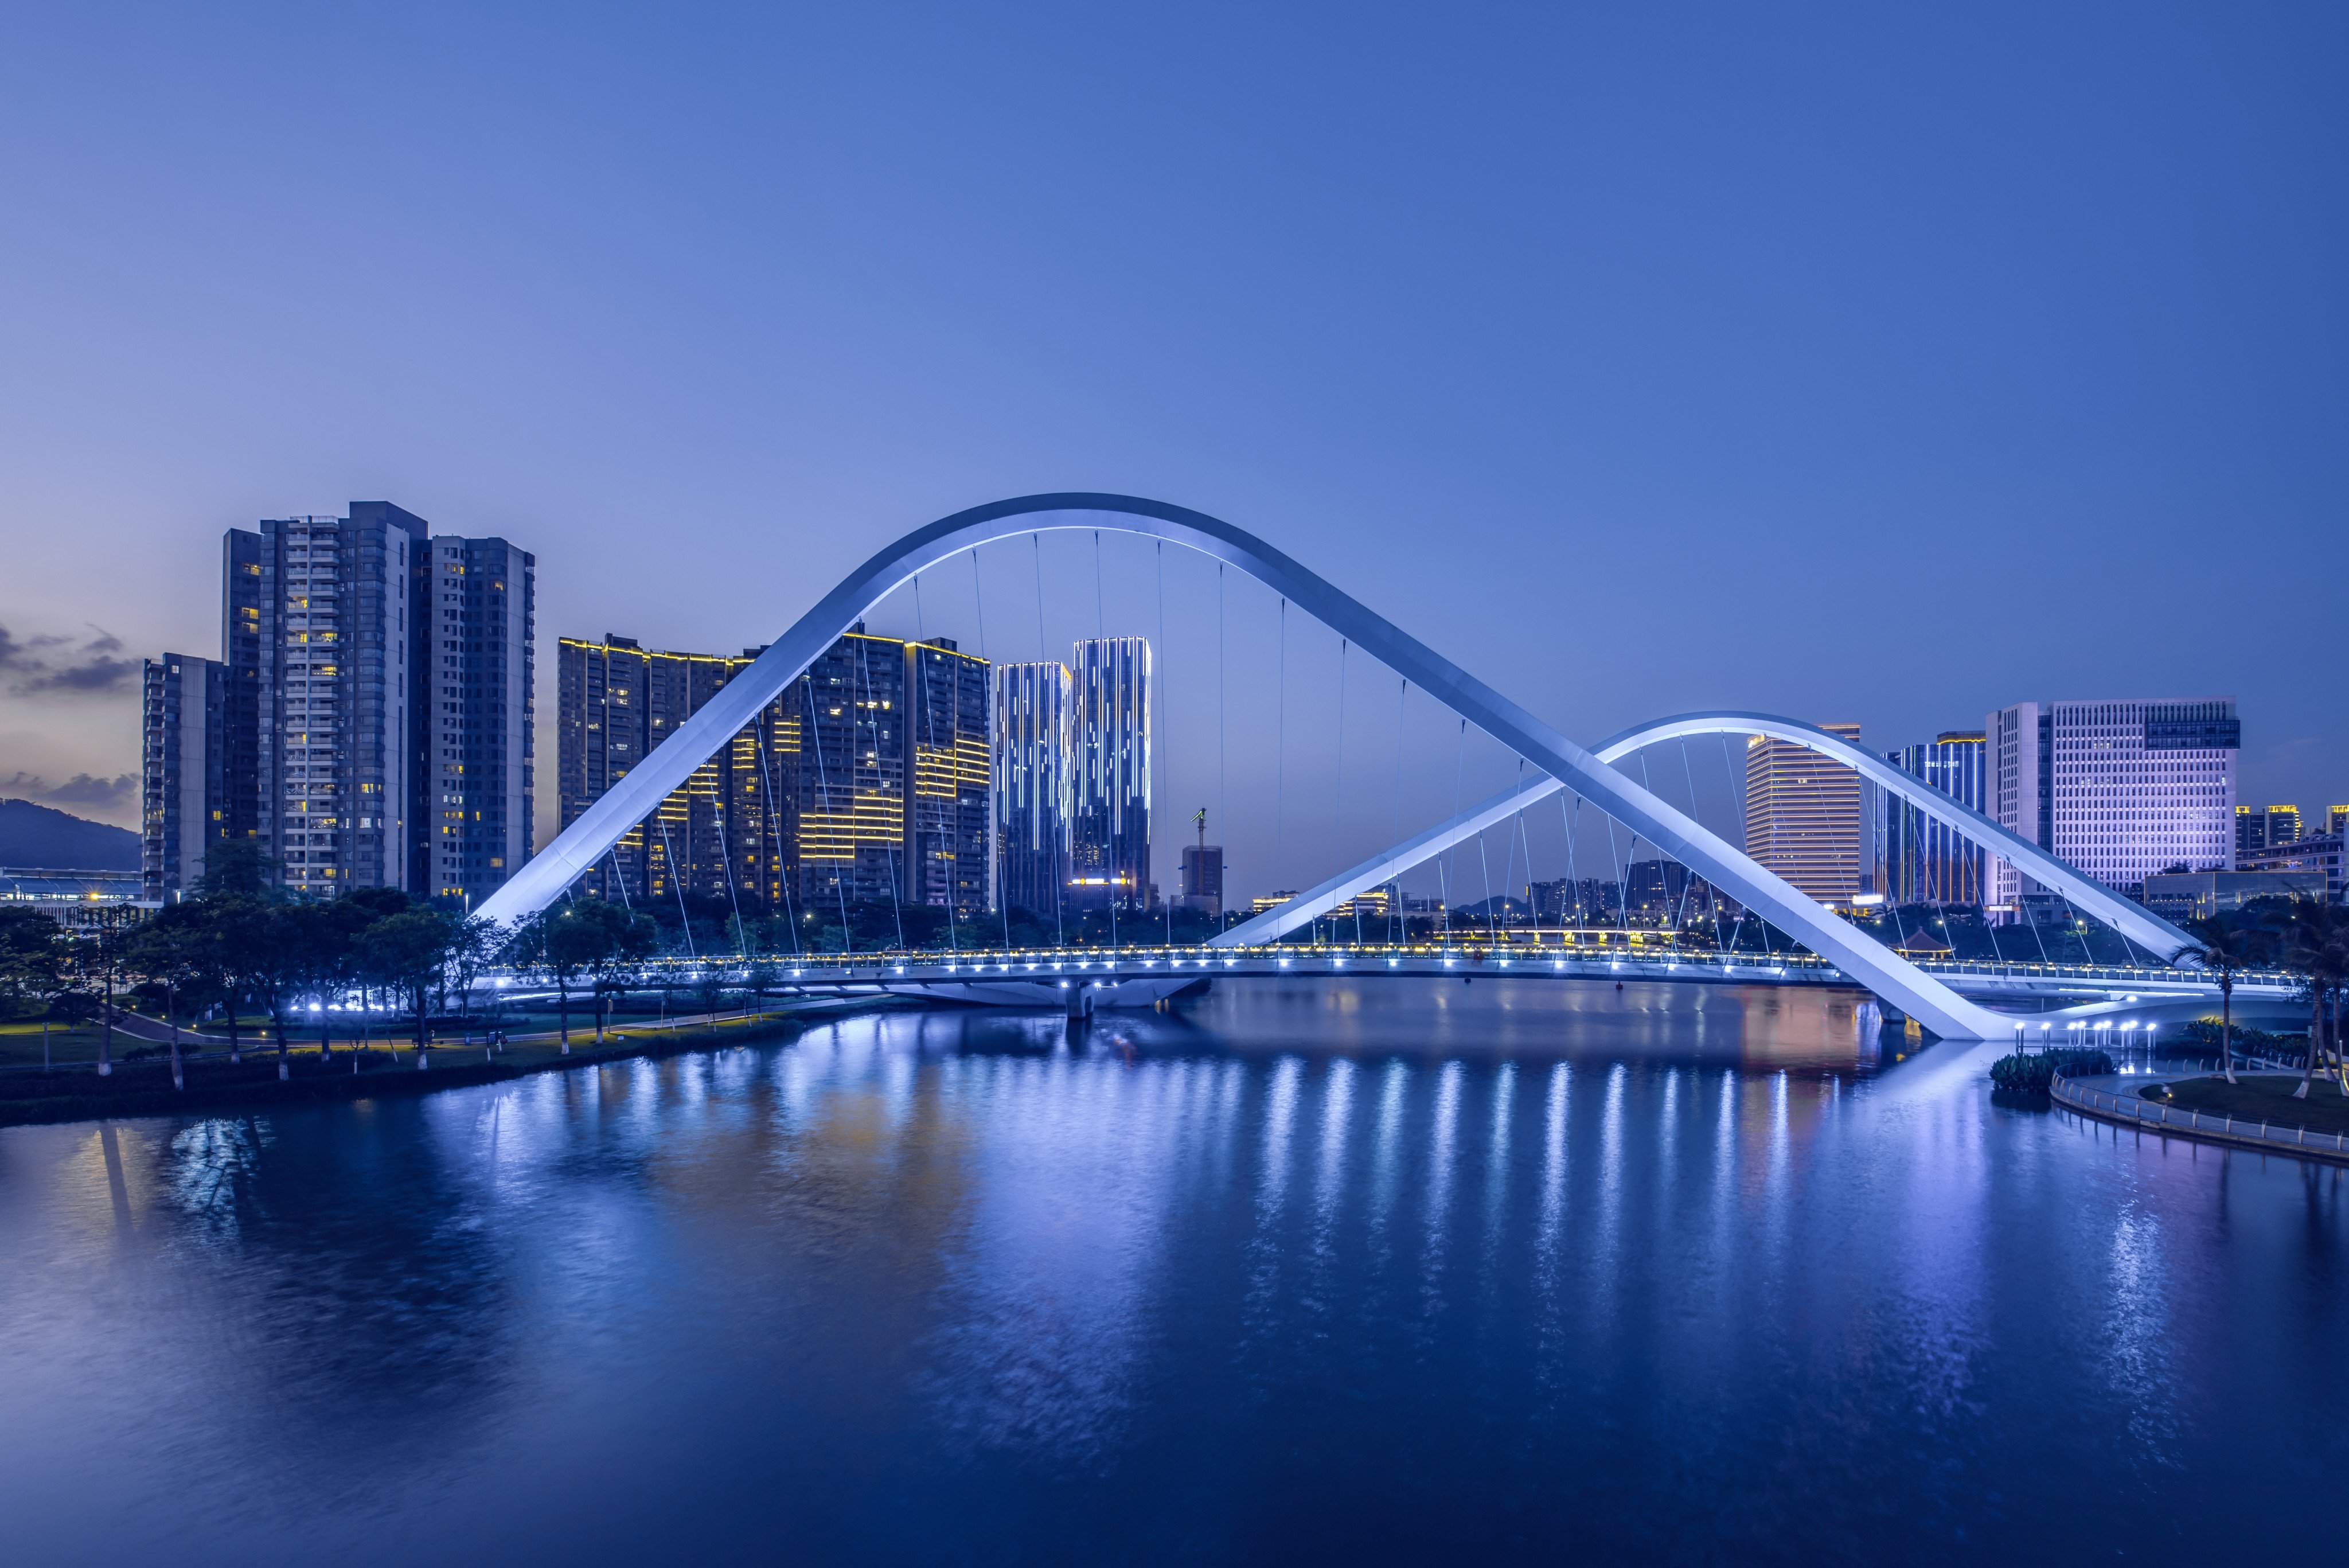 Night view of Jiaomen Bridge in Nansha, Guangzhou, China. Photo: Shutterstock